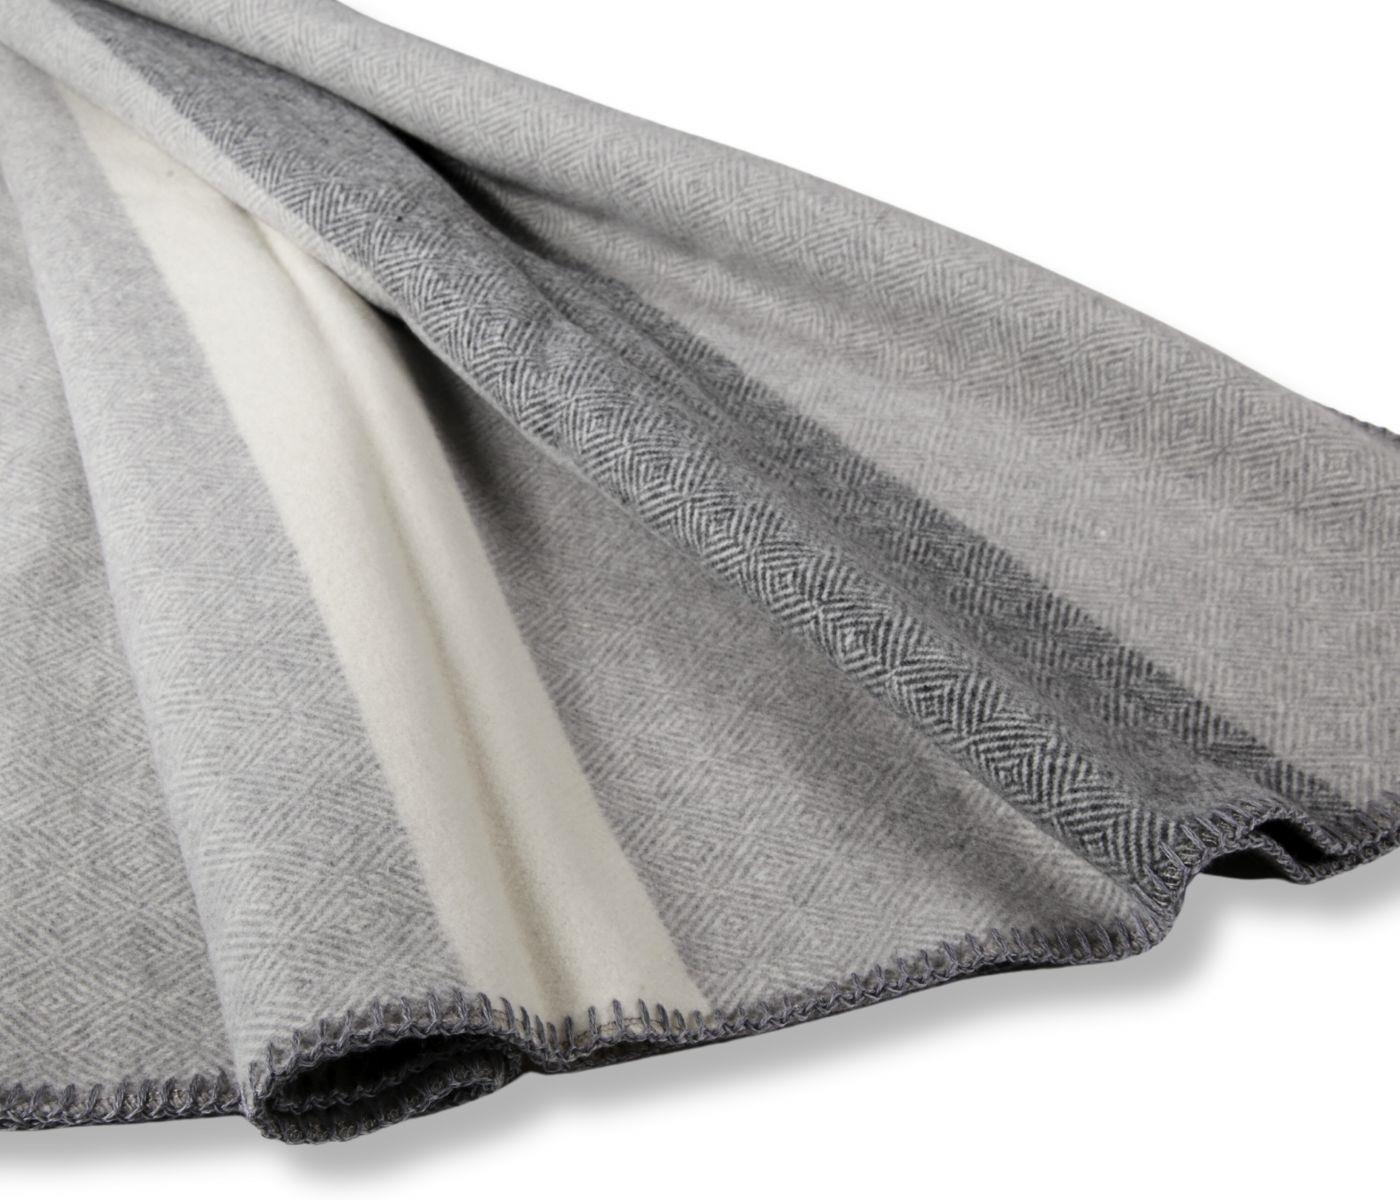 Eagle Products Wohndecke aus 100% Schurwolle, grau/weiß gestreift, 150 x 200 cm